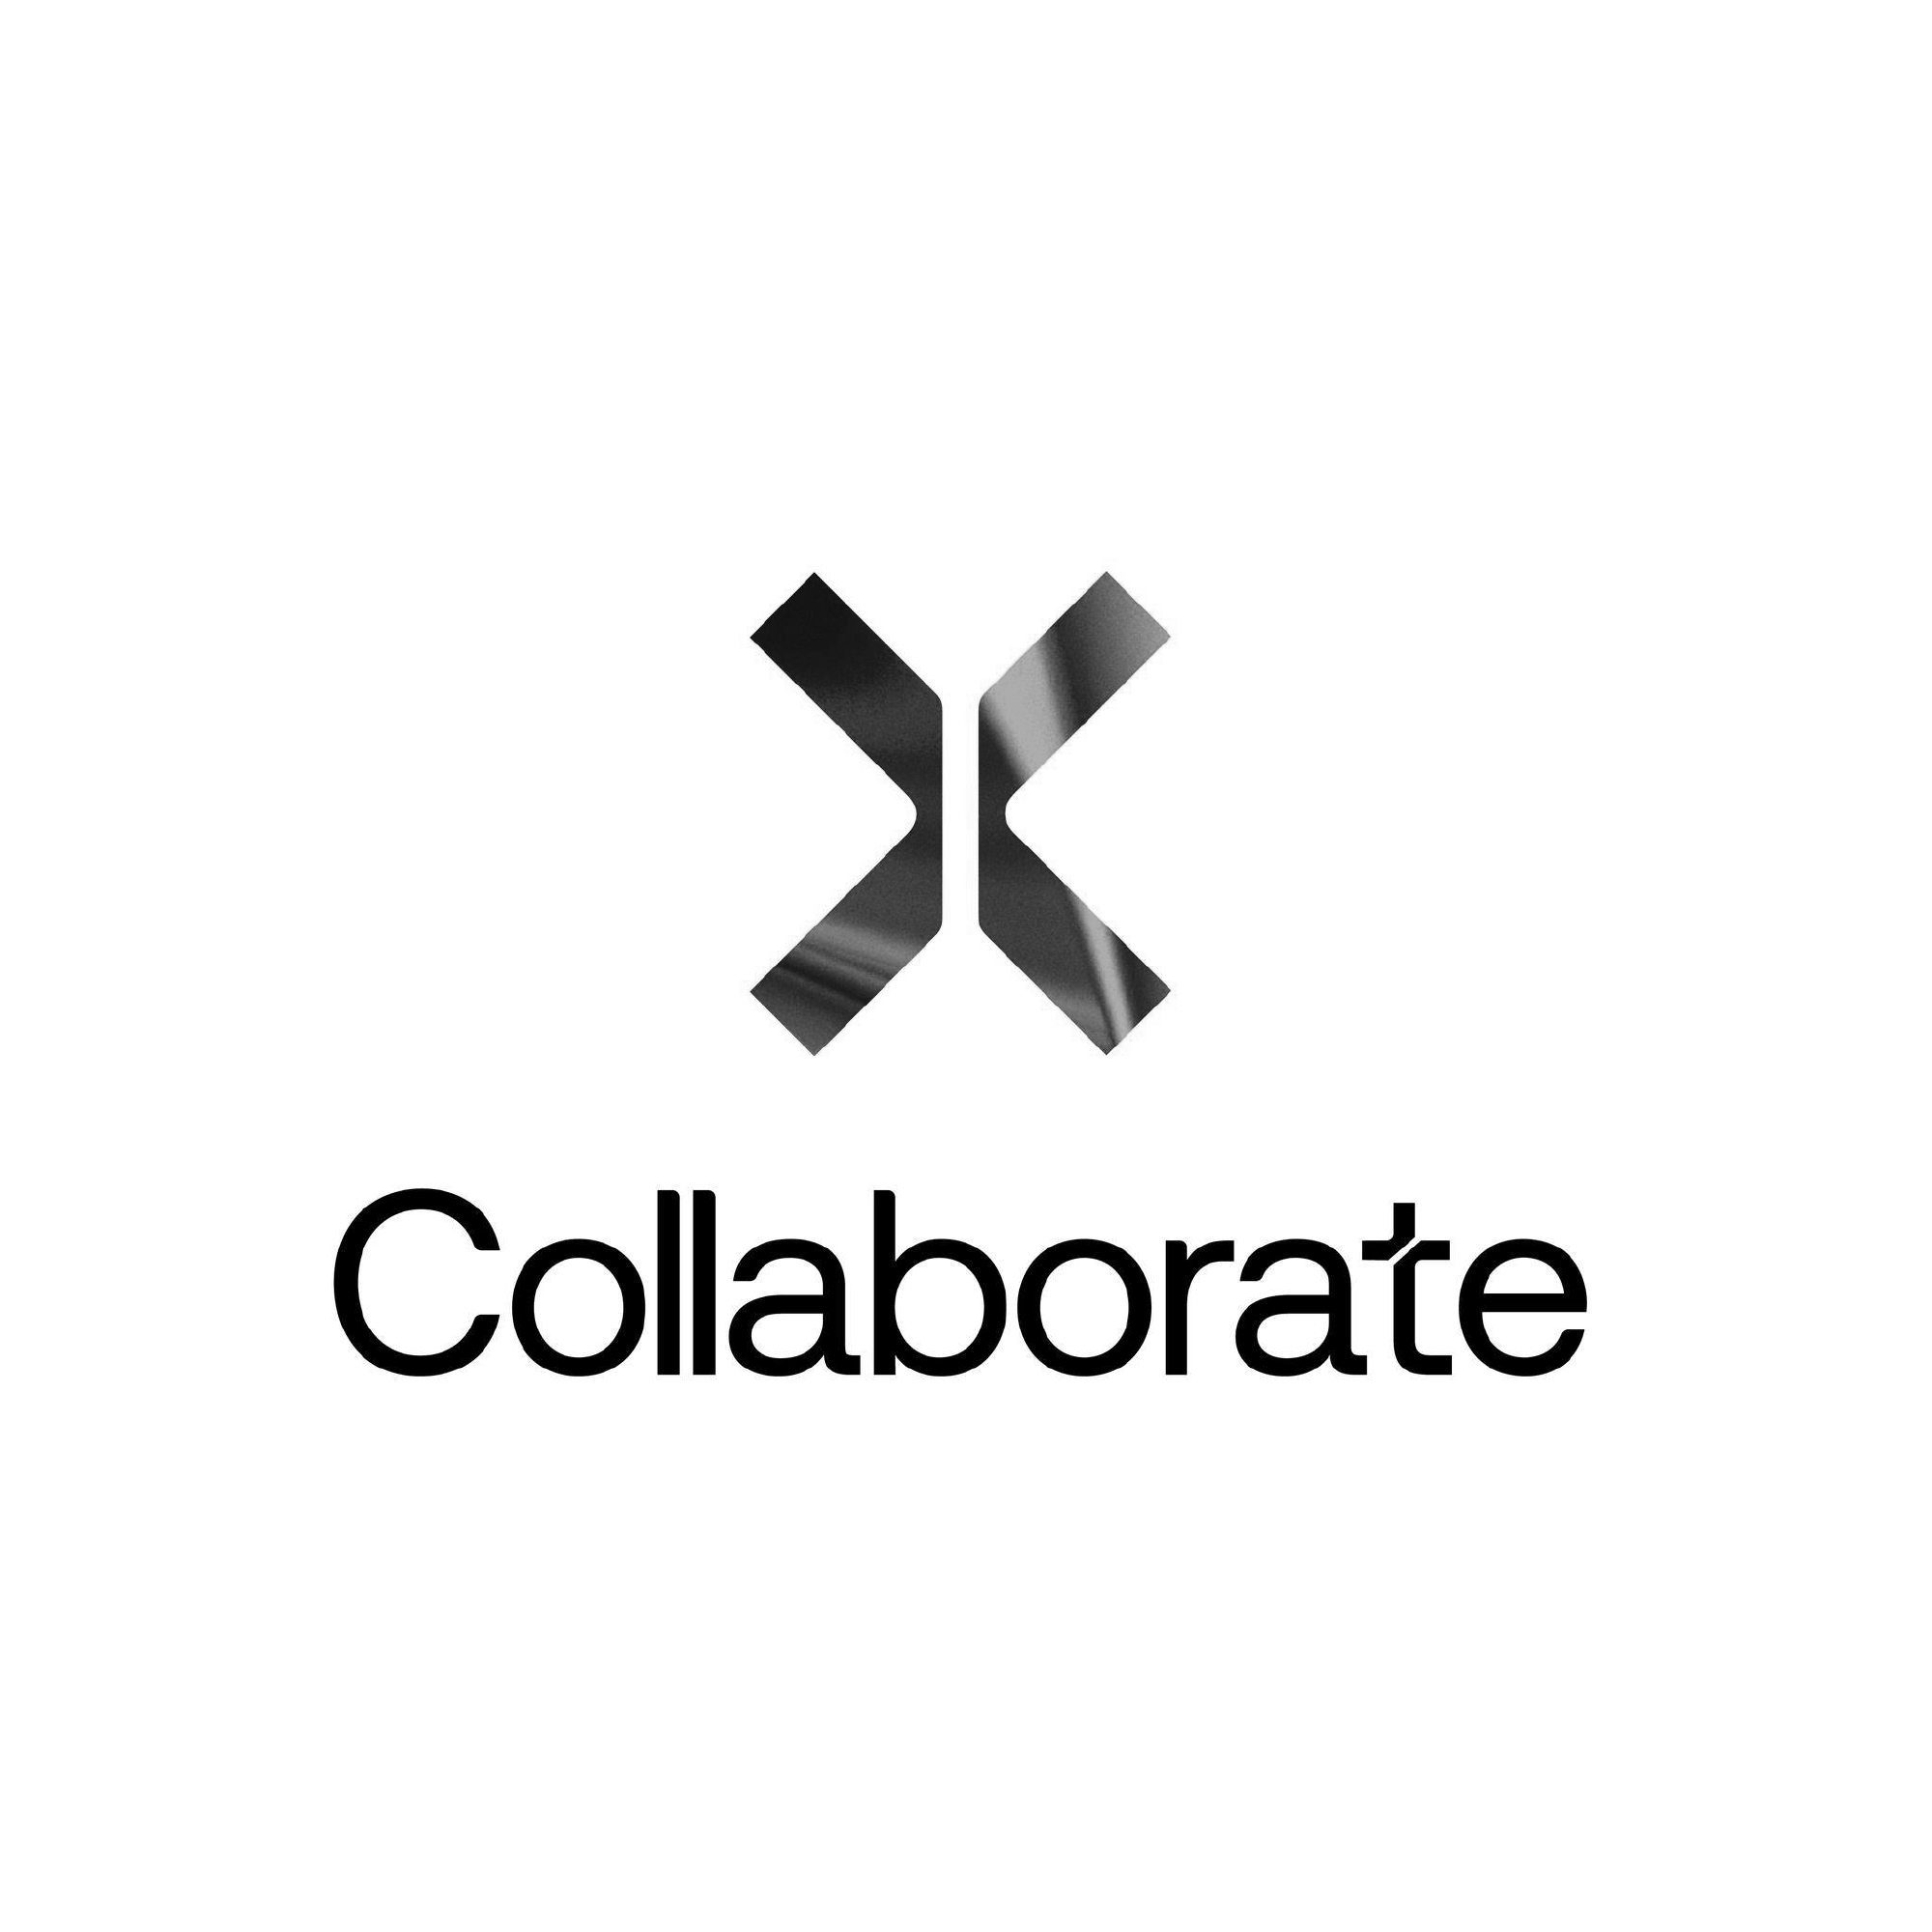 Collaborate (Copy) (Copy)